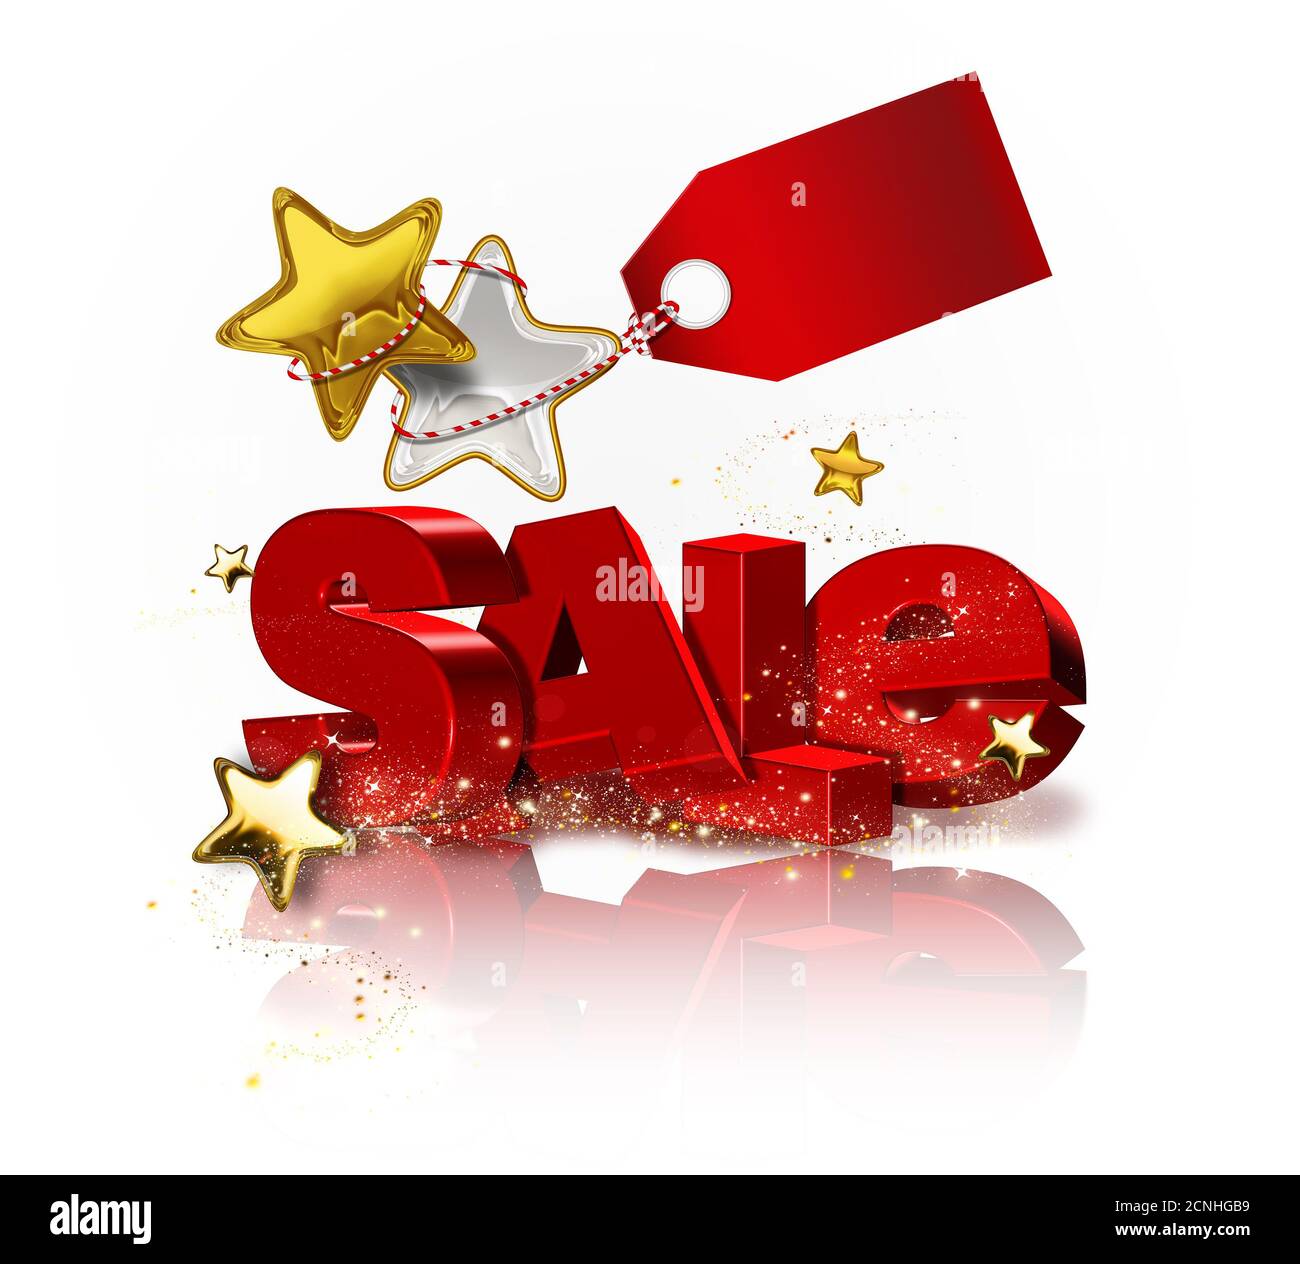 sales design Stock Photo